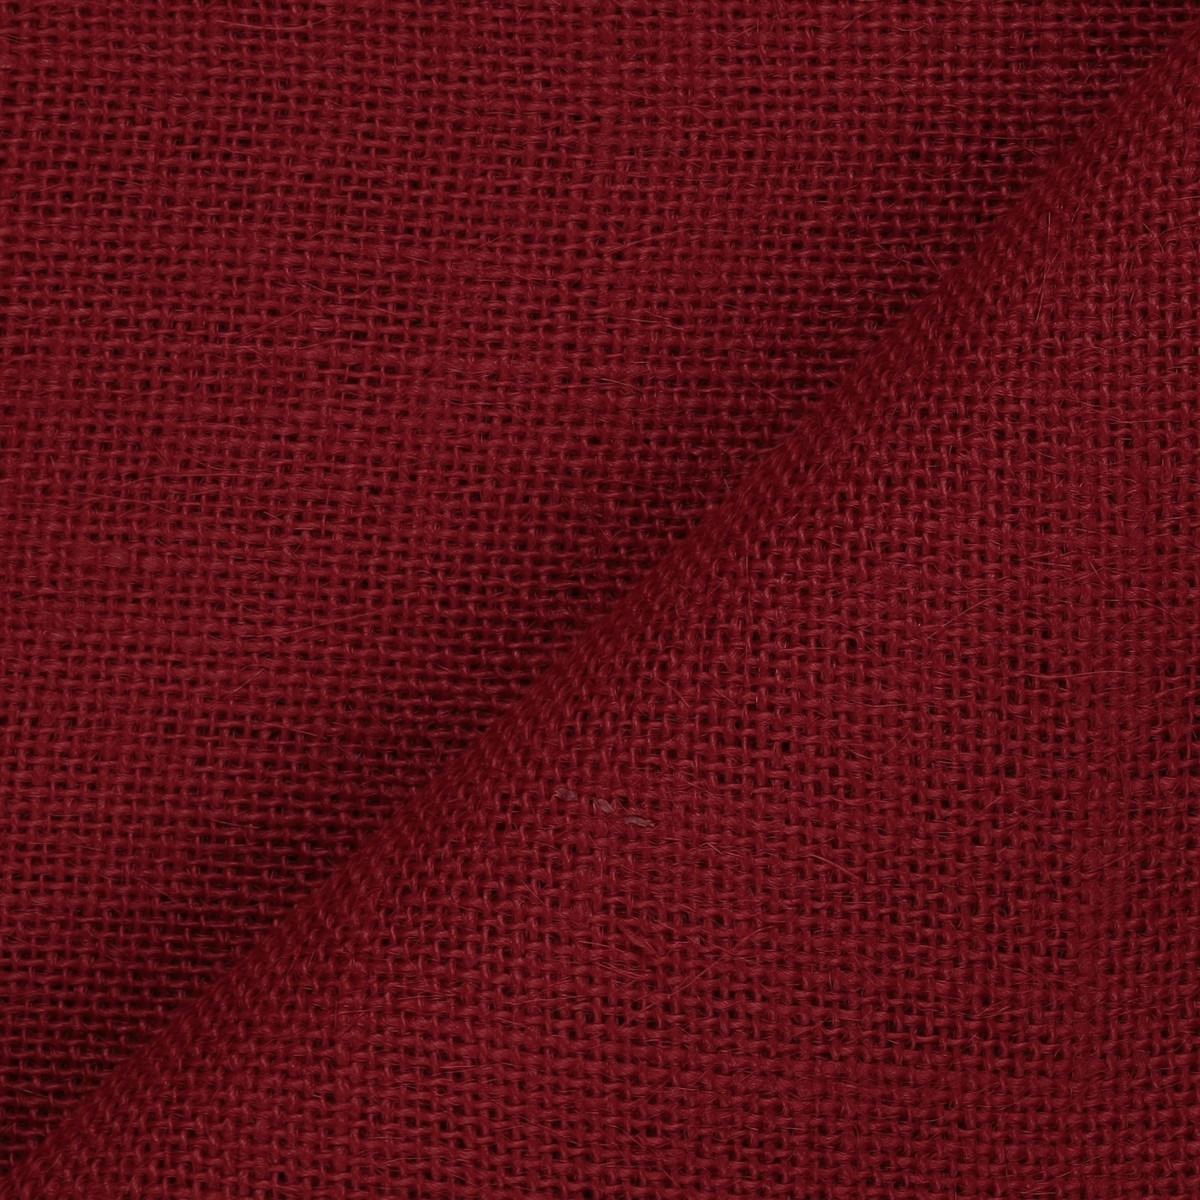 Fogli Juta - Colore Rosso India - Misura 150x140cm 